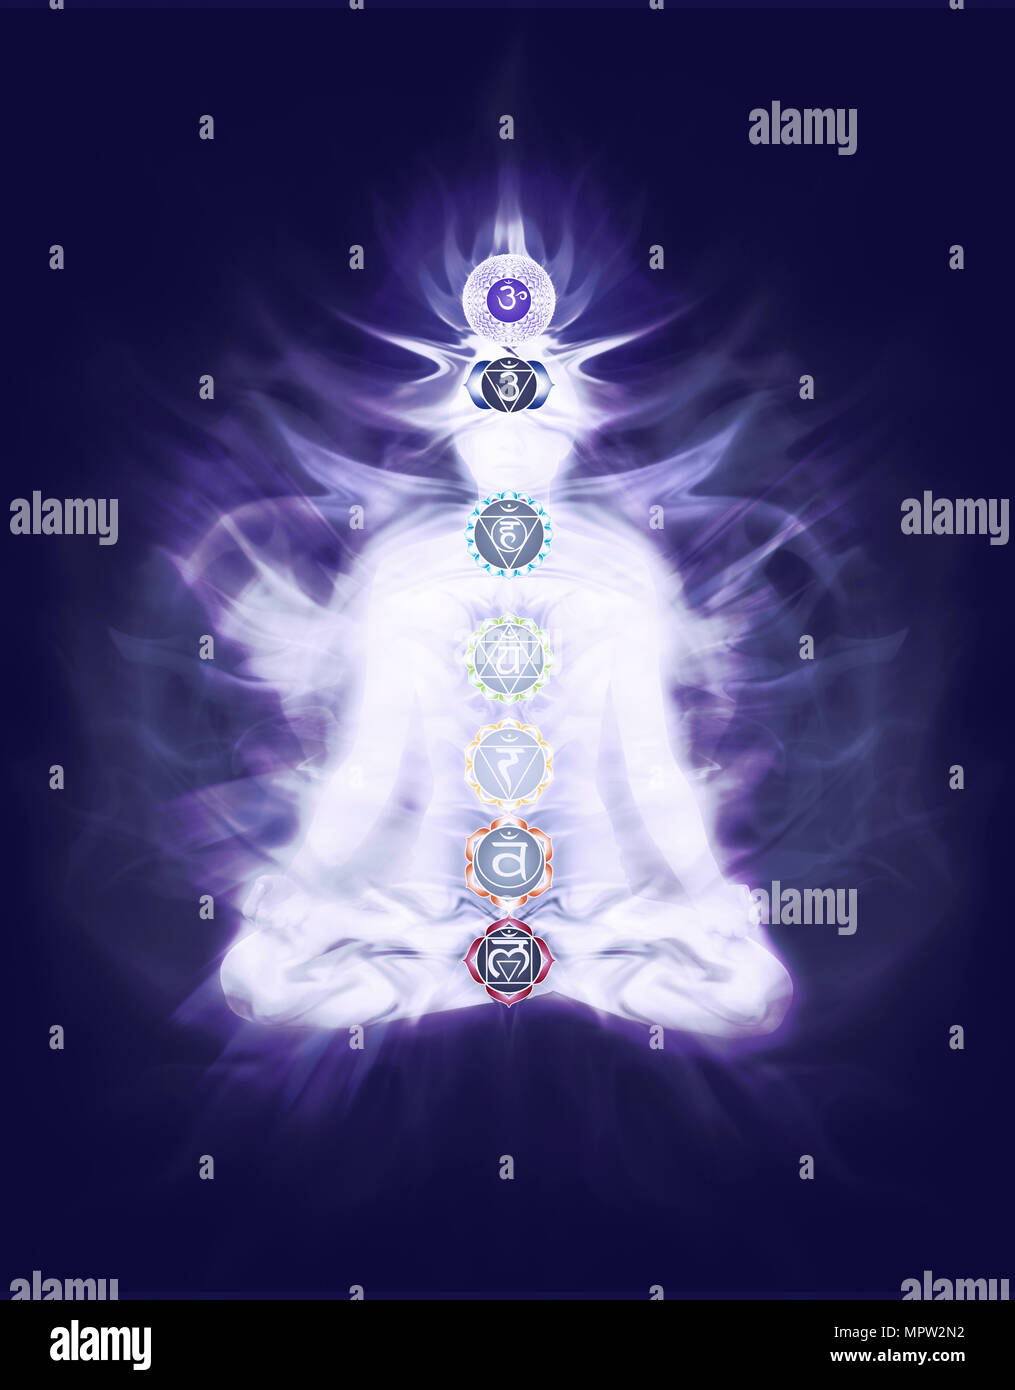 Donna seduta in meditazione Yoga lotus posano con colorati simboli chakra e che emana energia Qi sovrapposto sul corpo sul blu navy blu porpora colore b Foto Stock